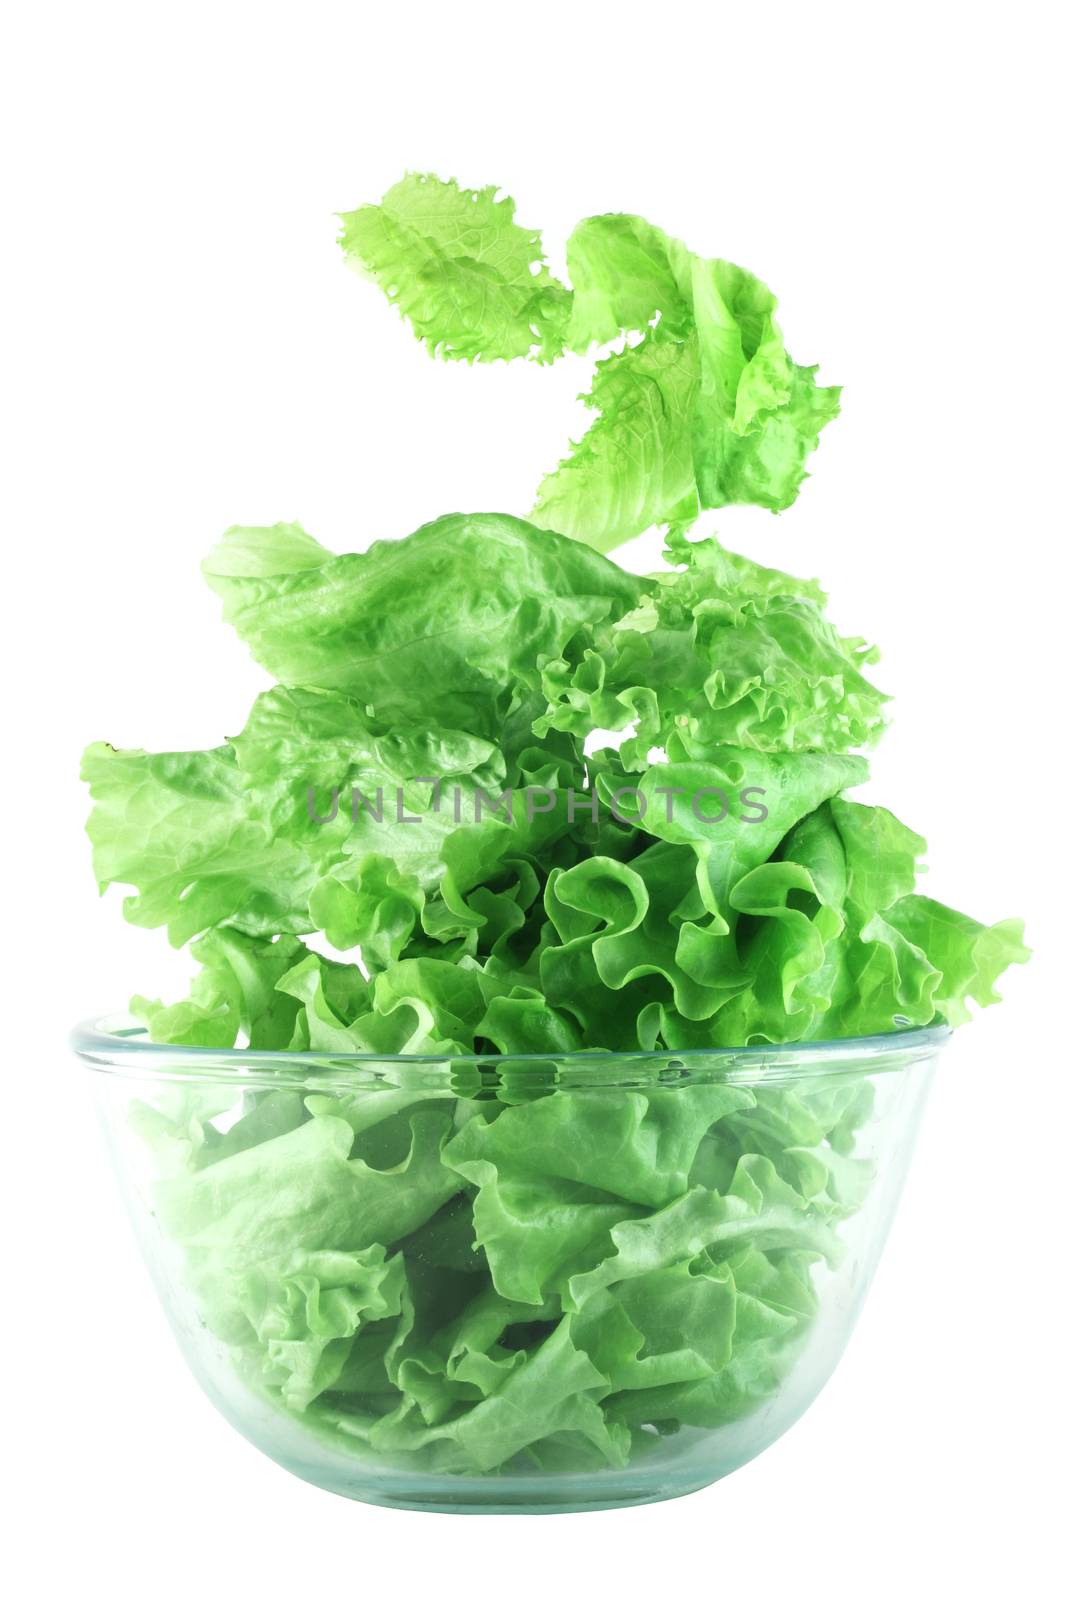  Light lettuce salad in transparent bowl isolated on white lightness concept